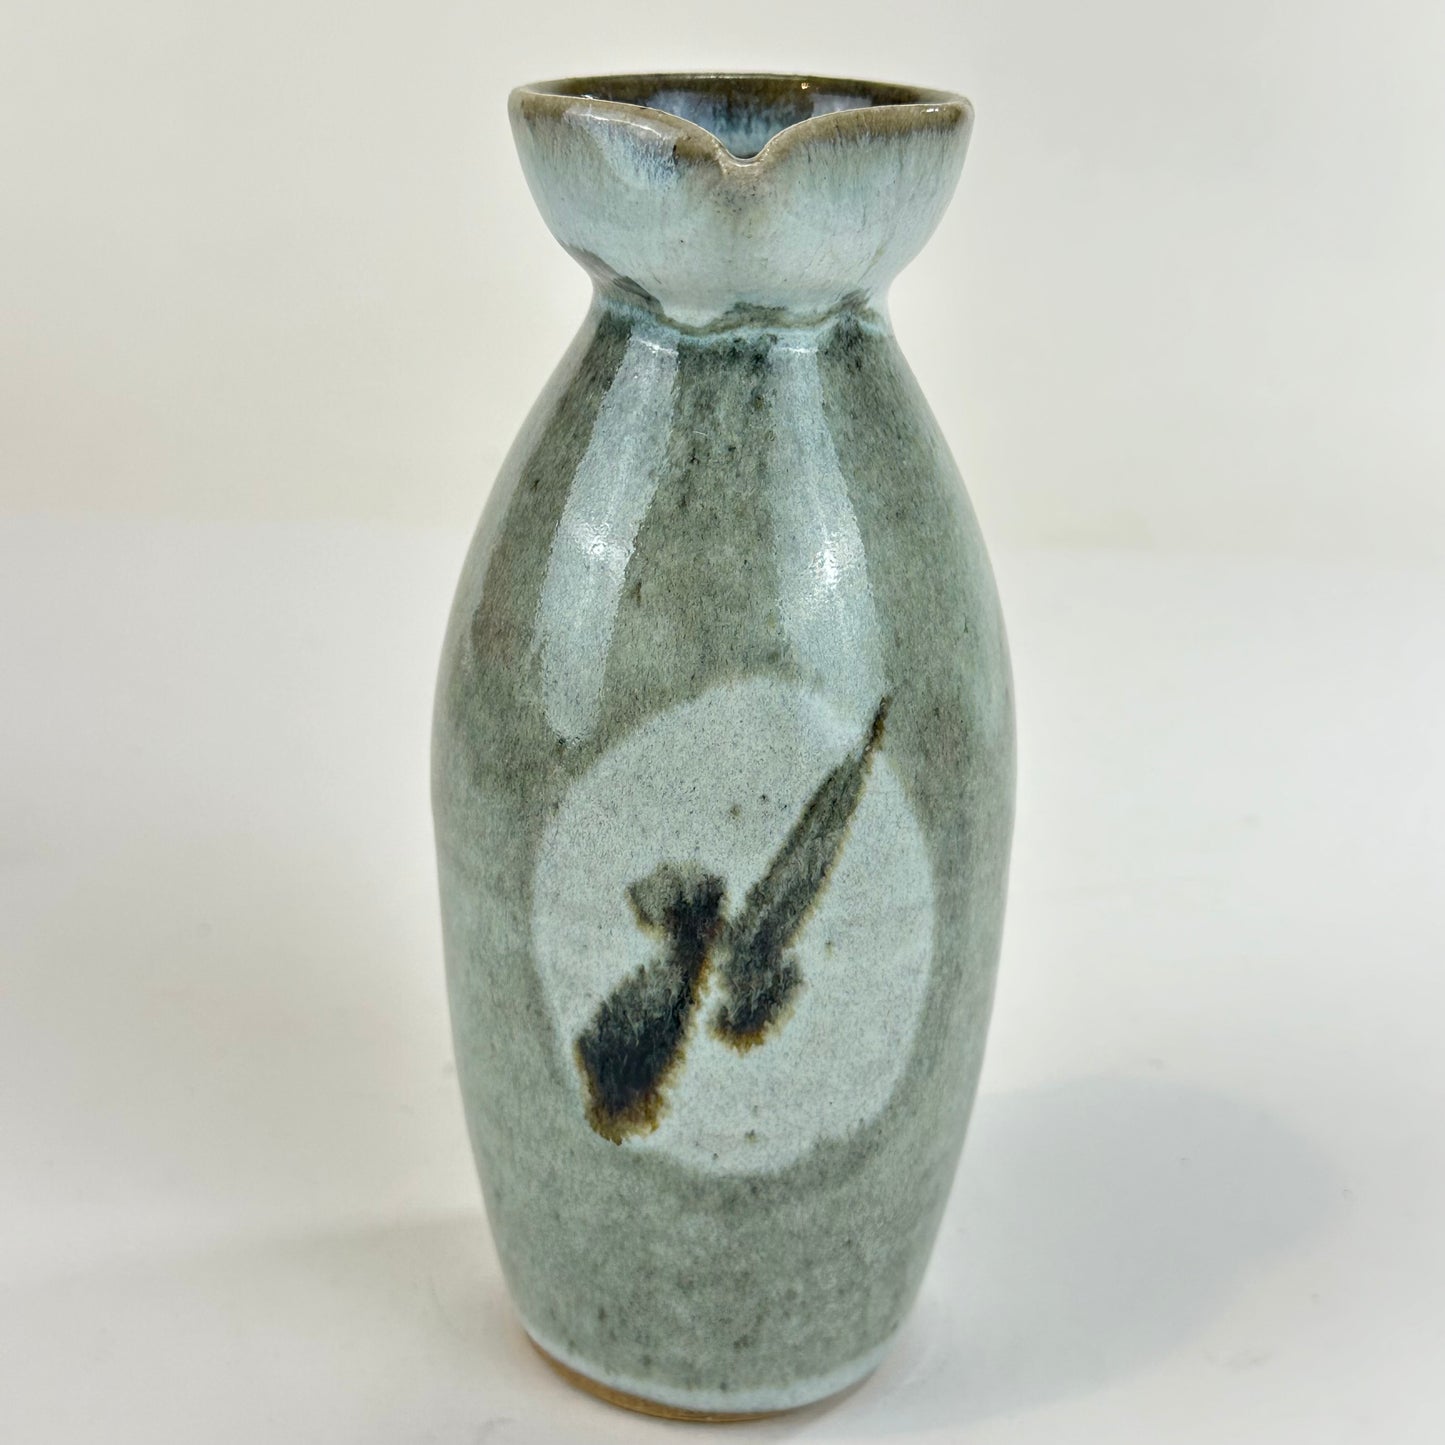 Vintage Japanese Sake Bottle Tokkuri Drip Glaze